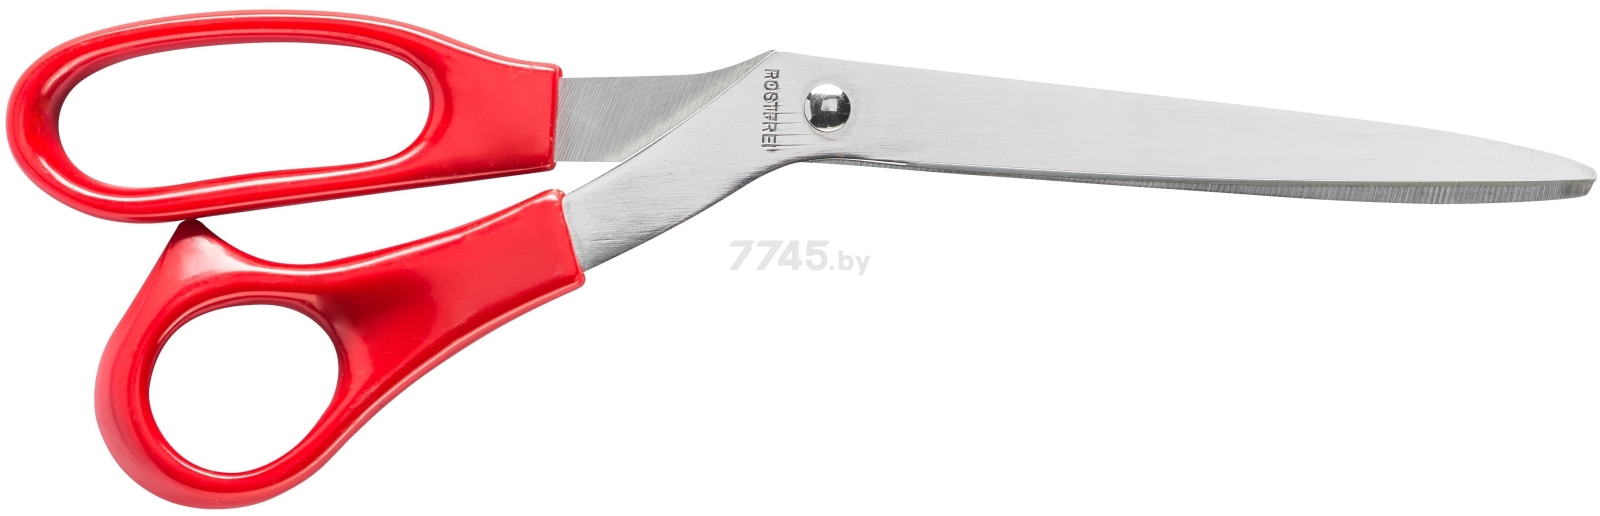 Ножницы универсальные HARDY 230 мм (0640-632800)